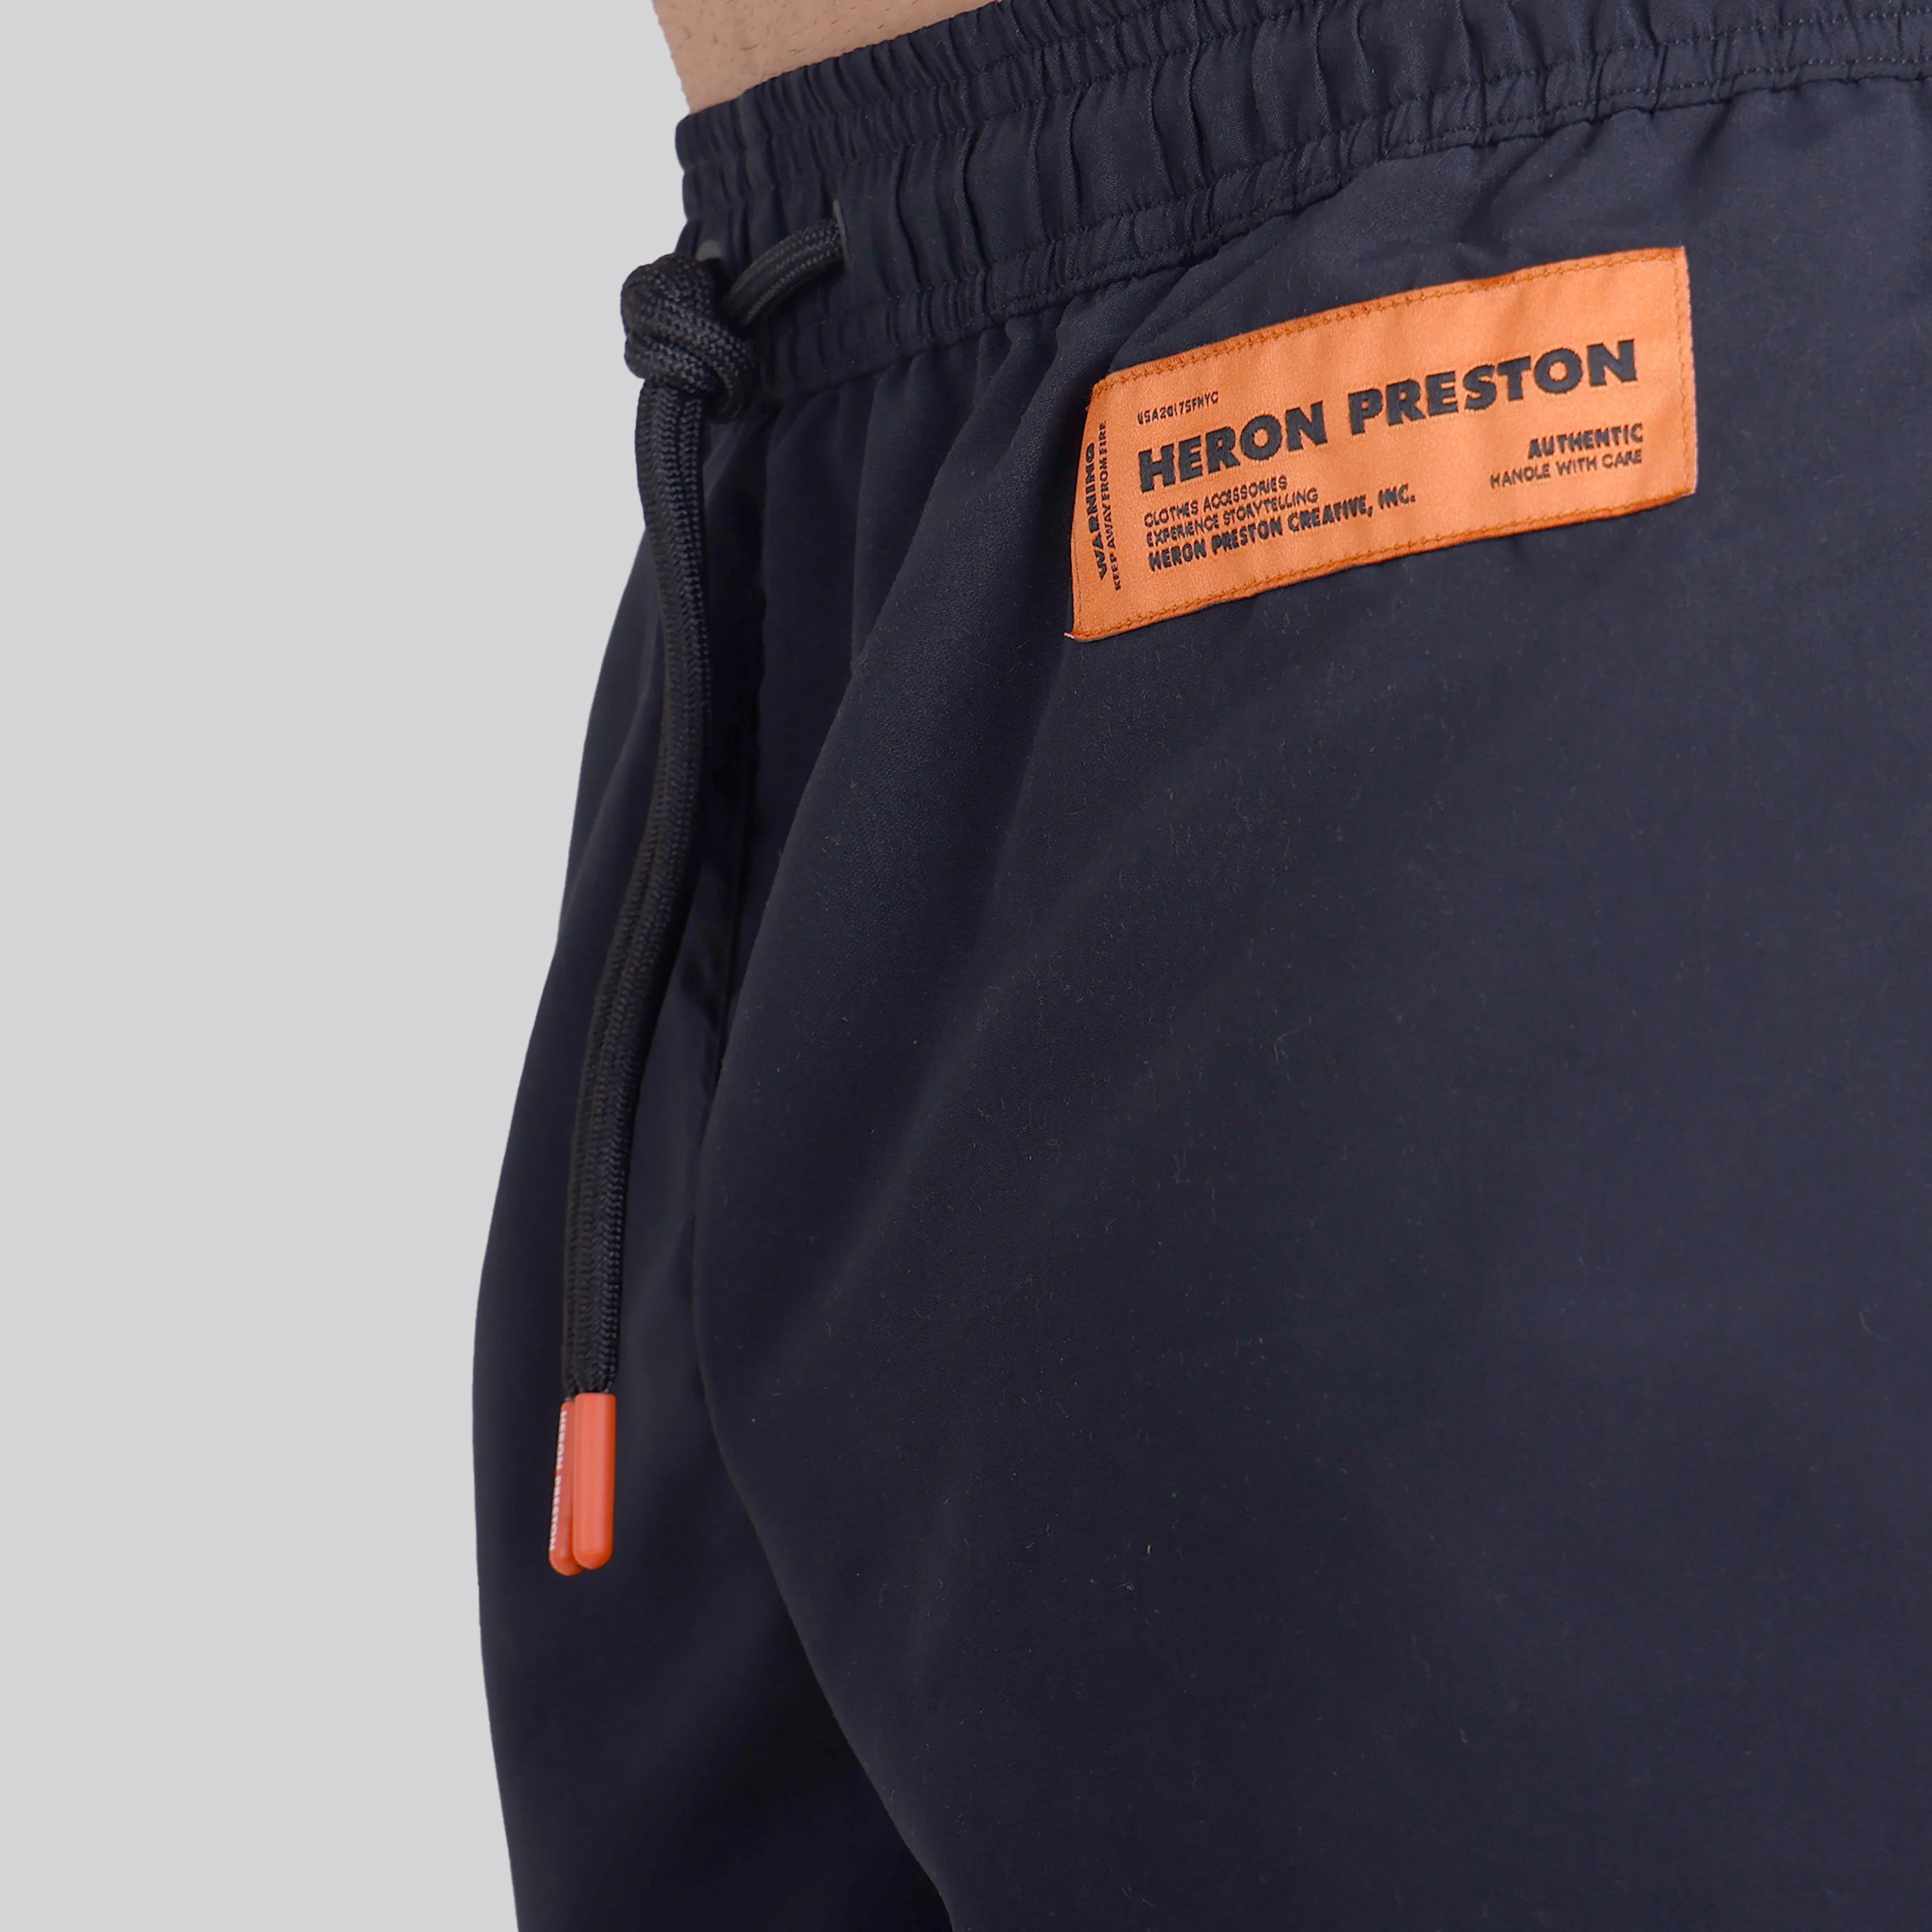 Pantaloneta de Baño Black Heron Preston Nylon